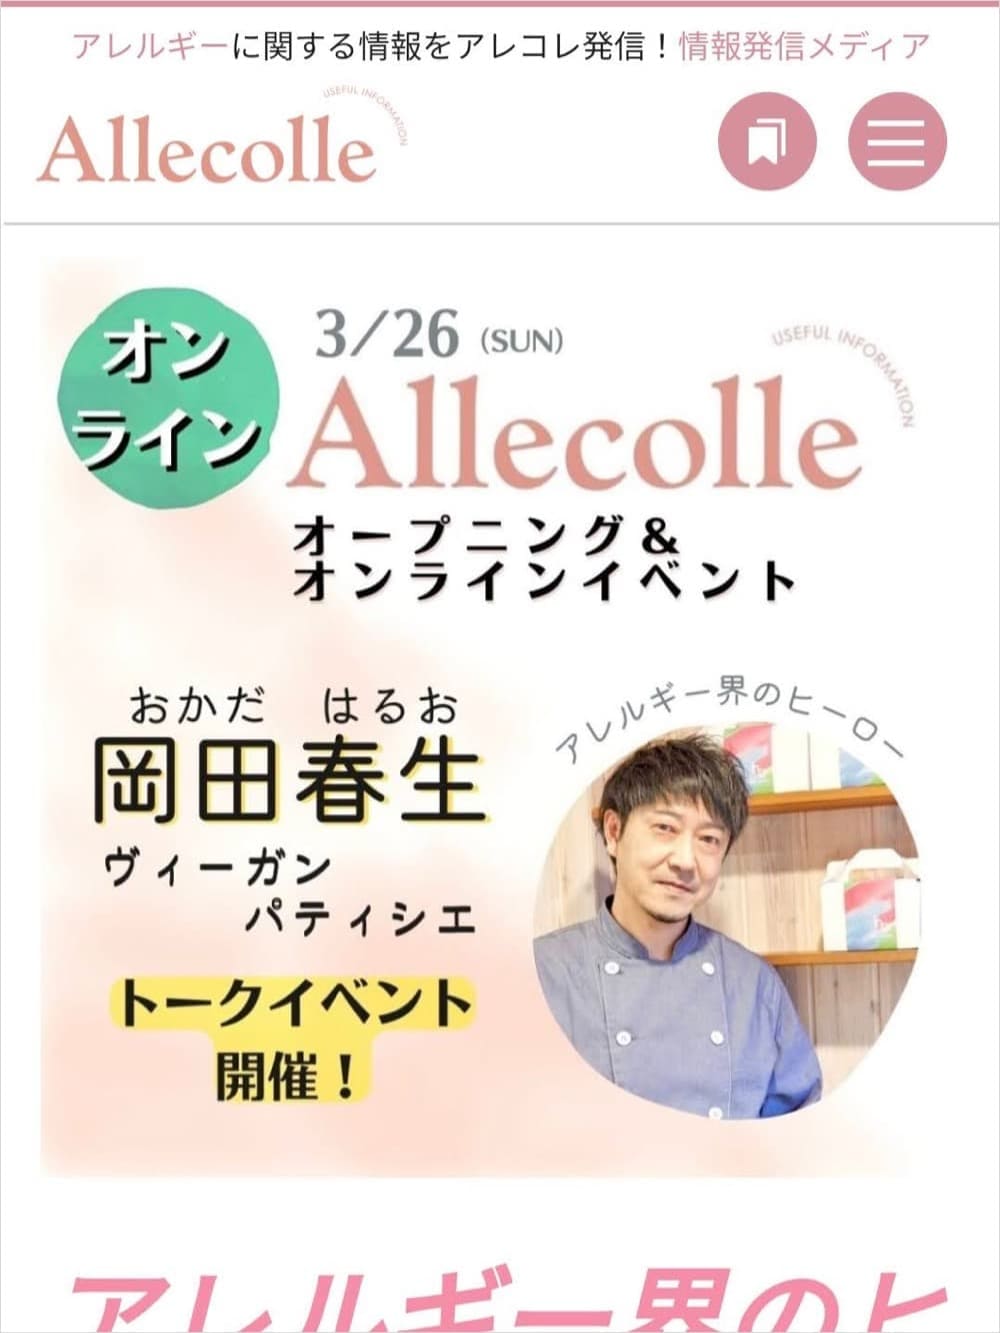 食物アレルギーのキュレーションメディア『Allecolle (アレコレ)』が公開！